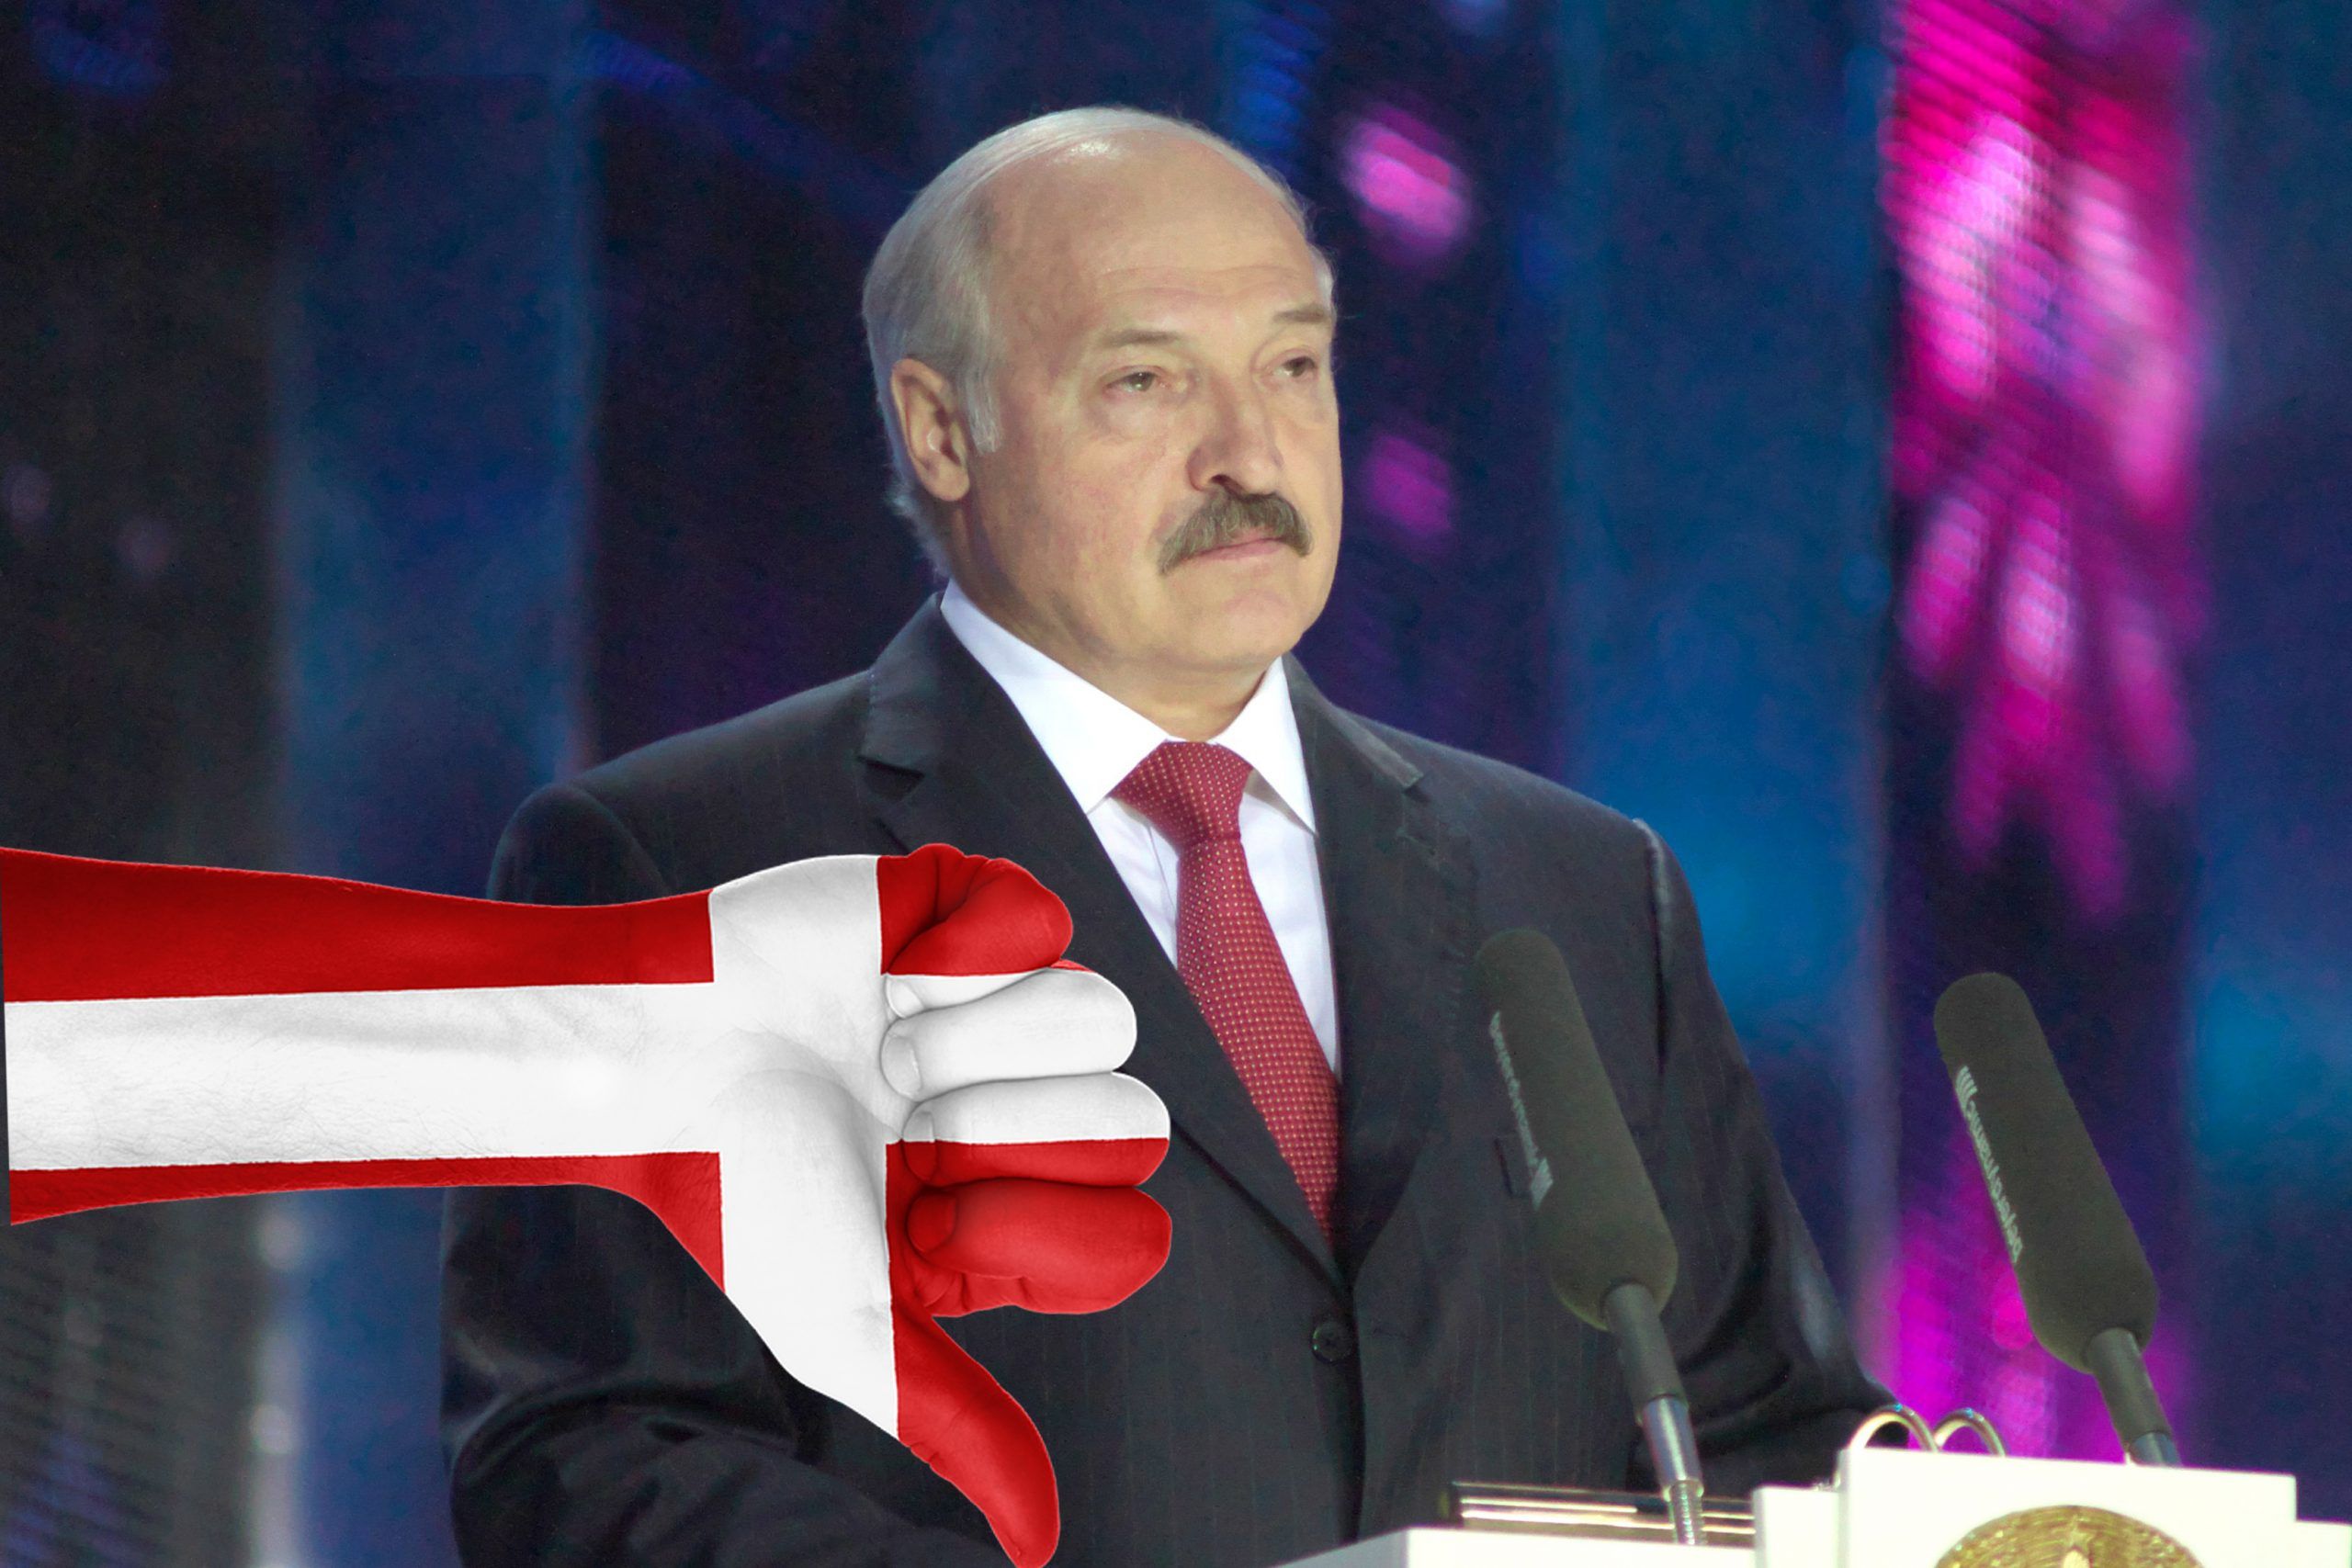 Denmark refuses to recognise Lukashenko 